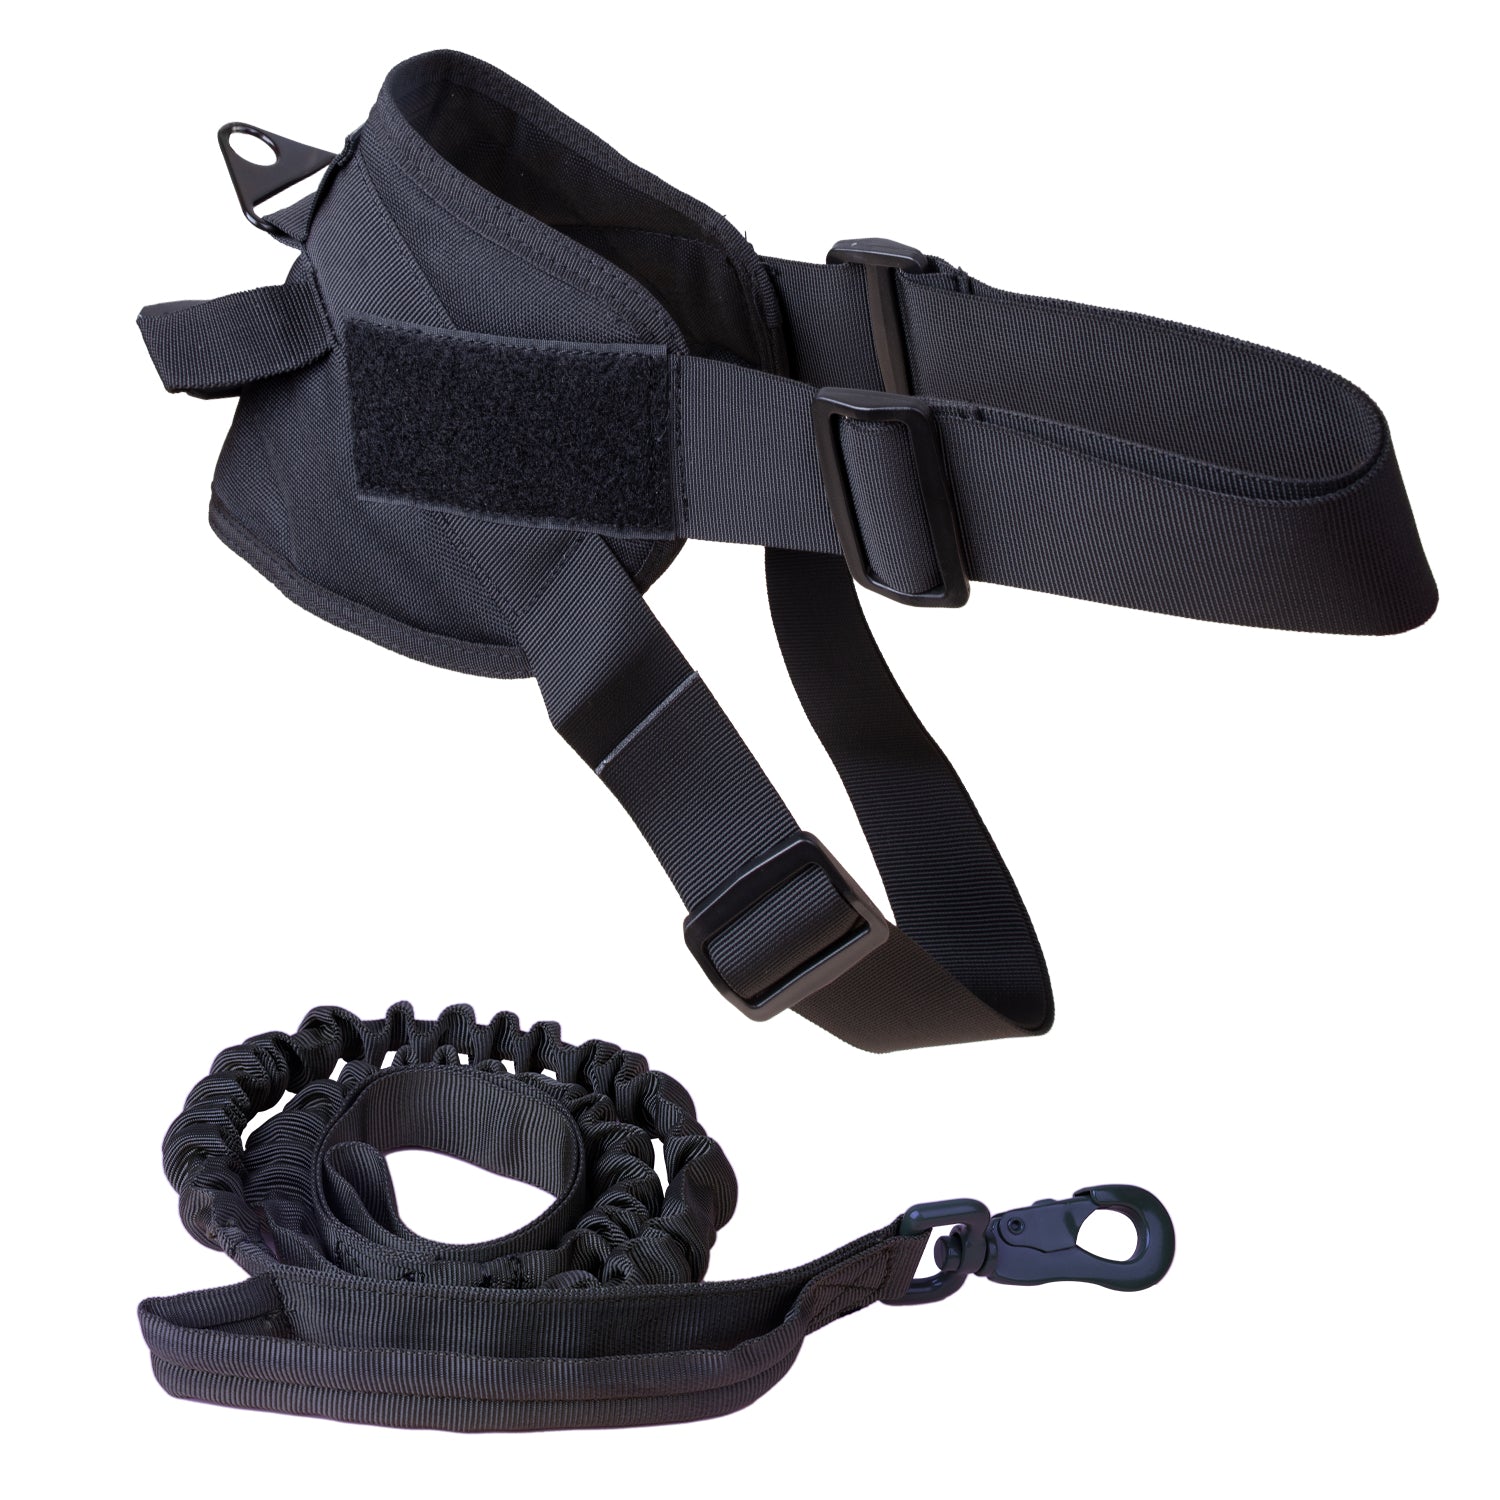 Adjustable Dog Vest & Leash - Black(Large)